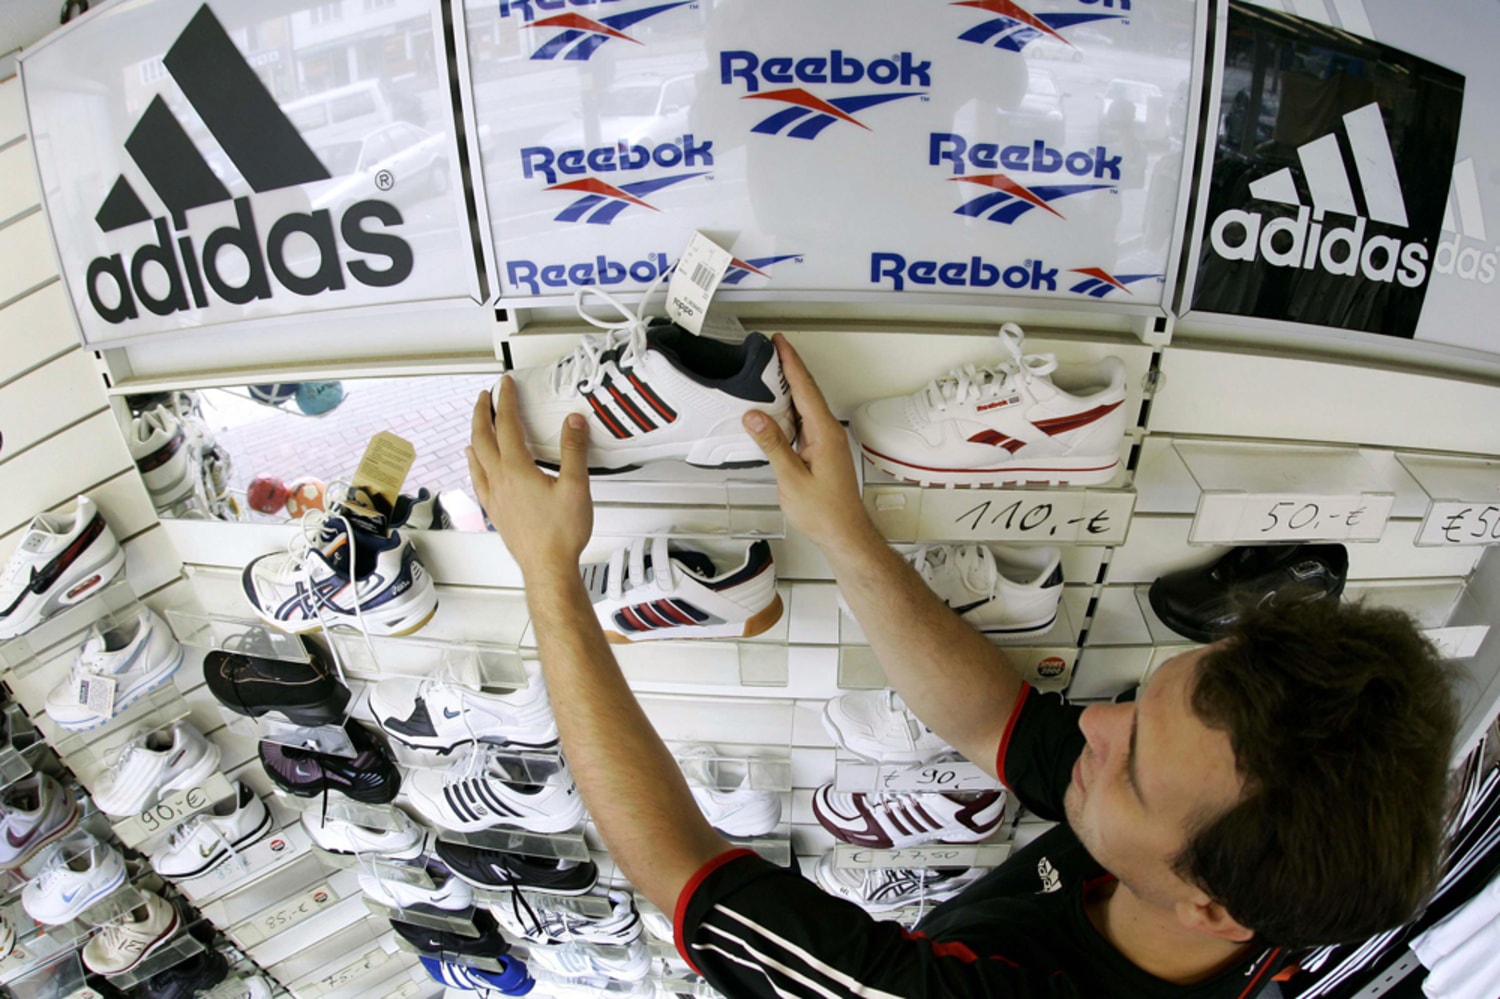 Sportswear maker Adidas to buy Reebok